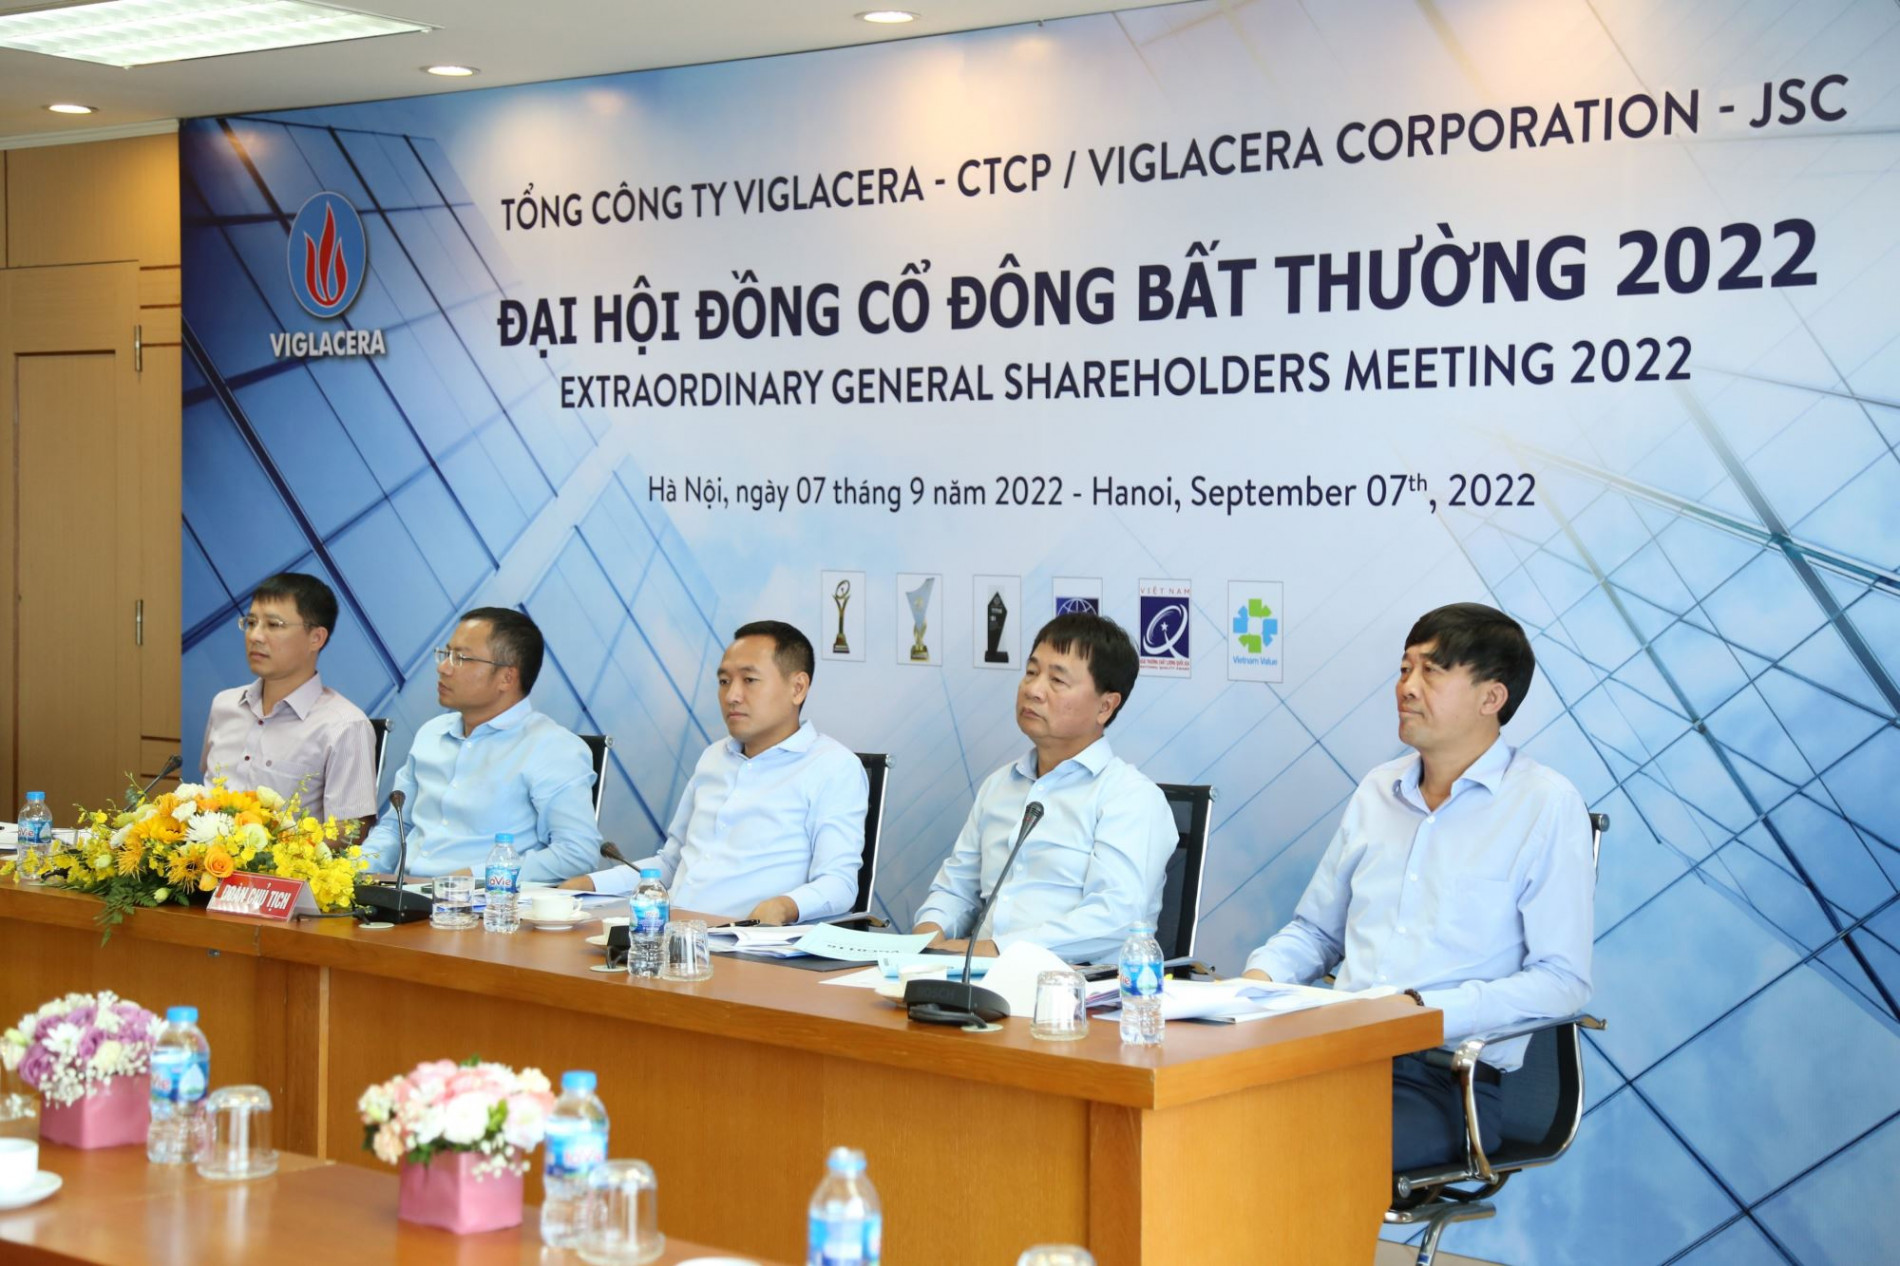 ĐHĐCĐ bất thường Viglacera: Ông Nguyễn Anh Tuấn tiếp tục giữ ghế TGĐ sau nghỉ hưu, doanh thu toàn tổng công ty ước vượt 1 tỷ USD